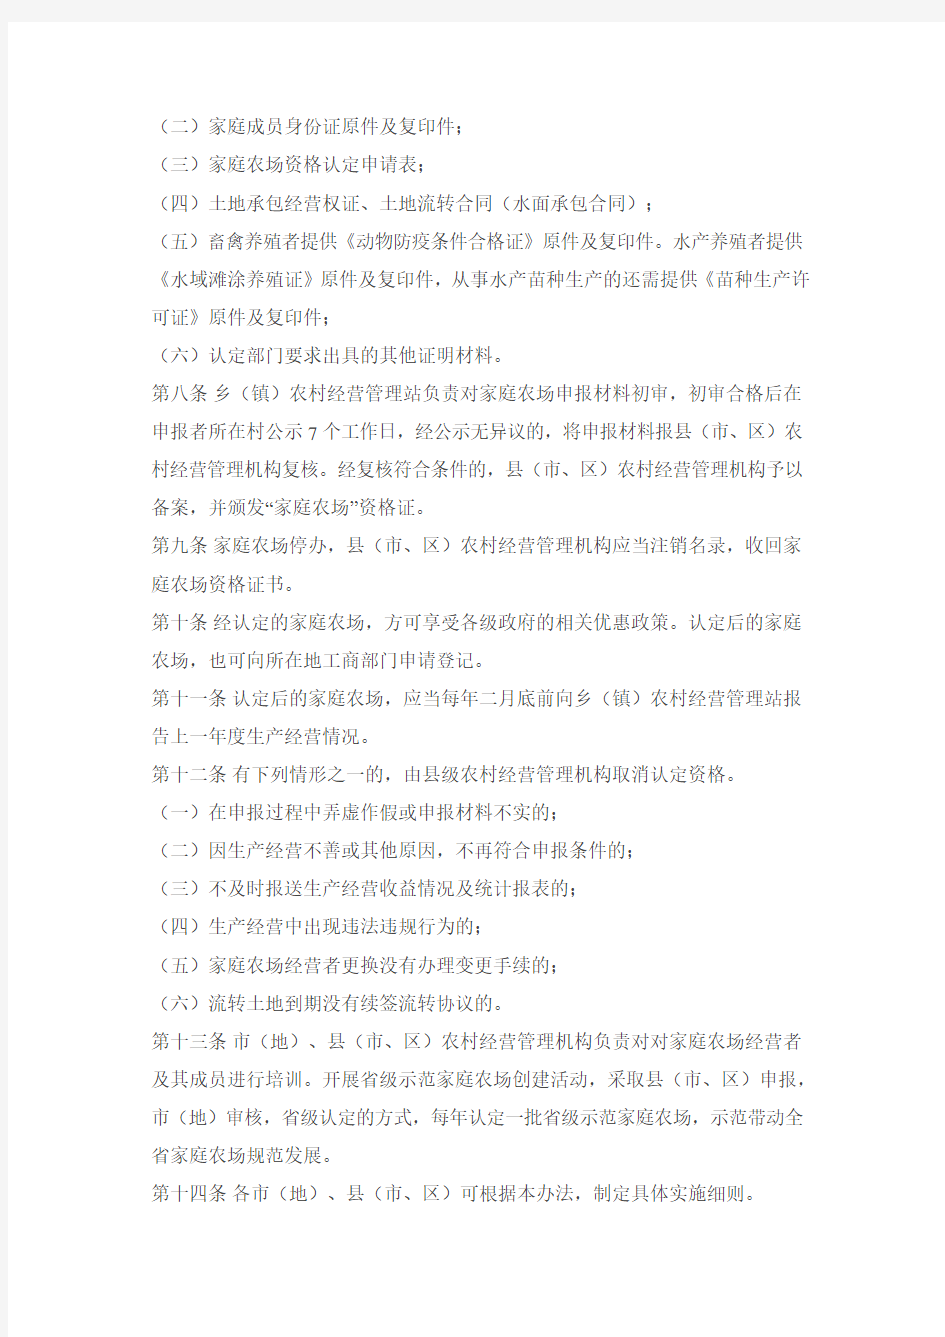 黑龙江省农民家庭农场认定管理办法